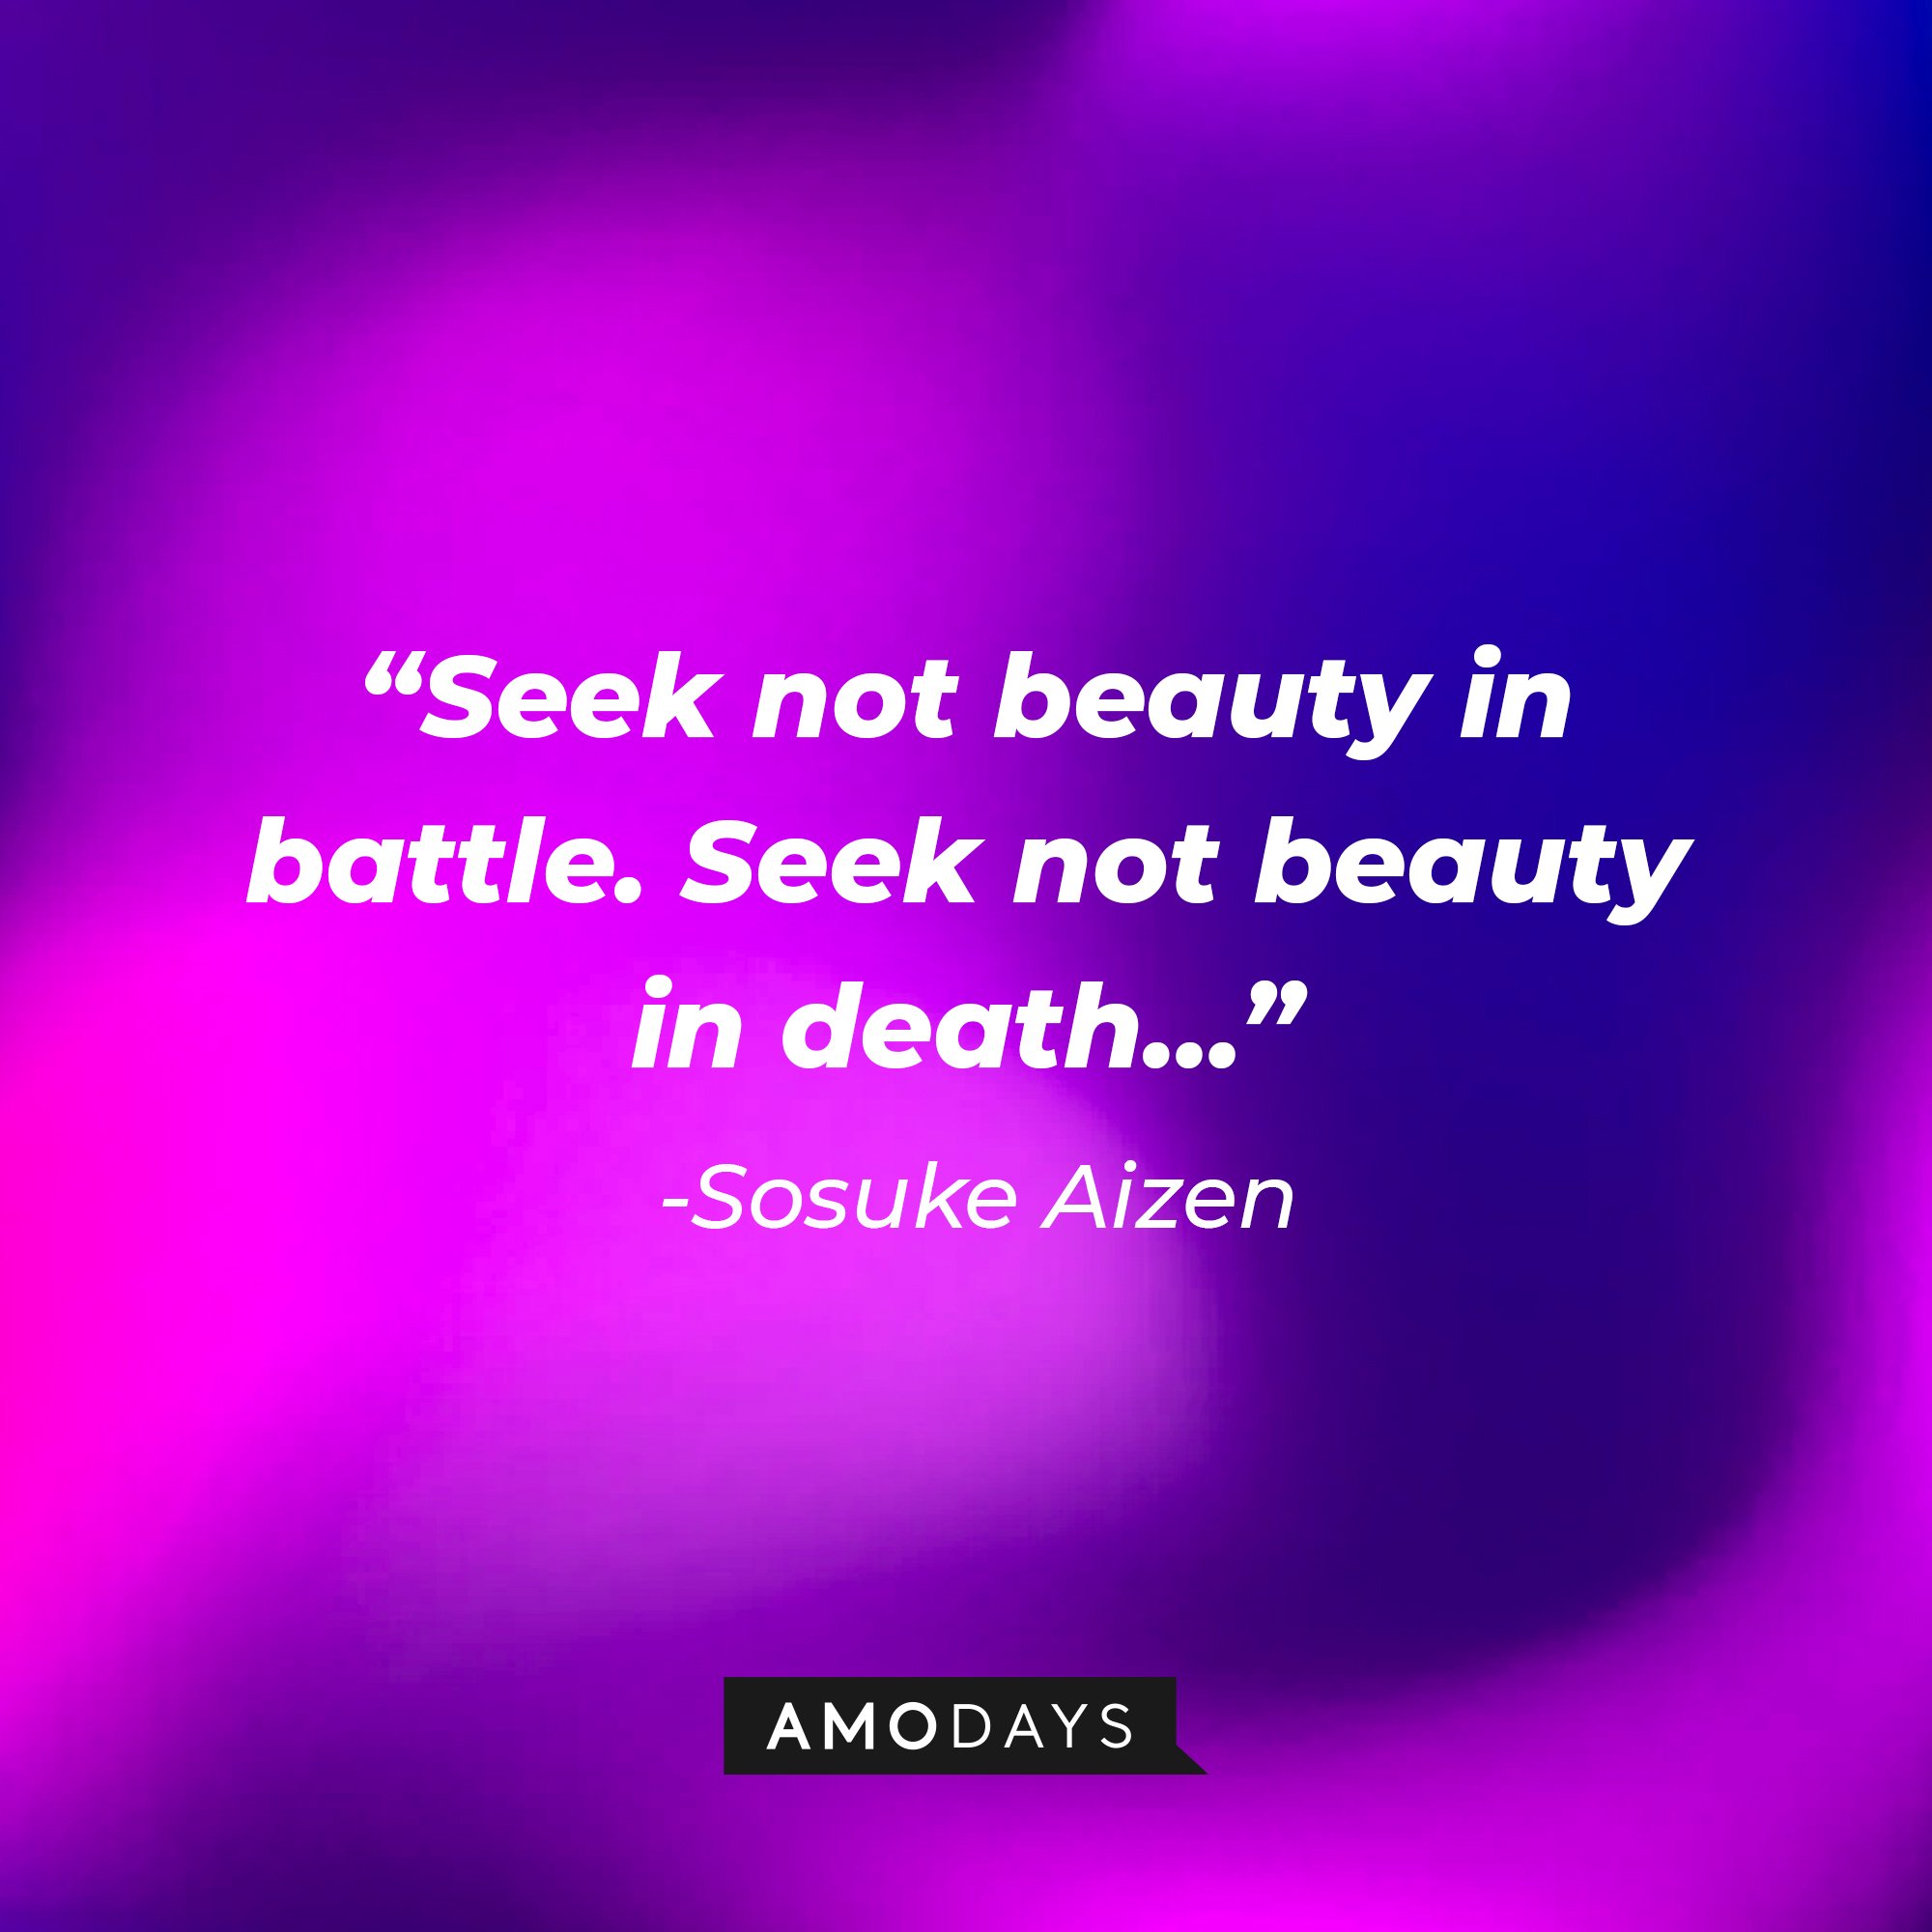 Sosuke Aizen's quote:  "Seek not beauty in battle. Seek not beauty in death."  | Image: AmoDays